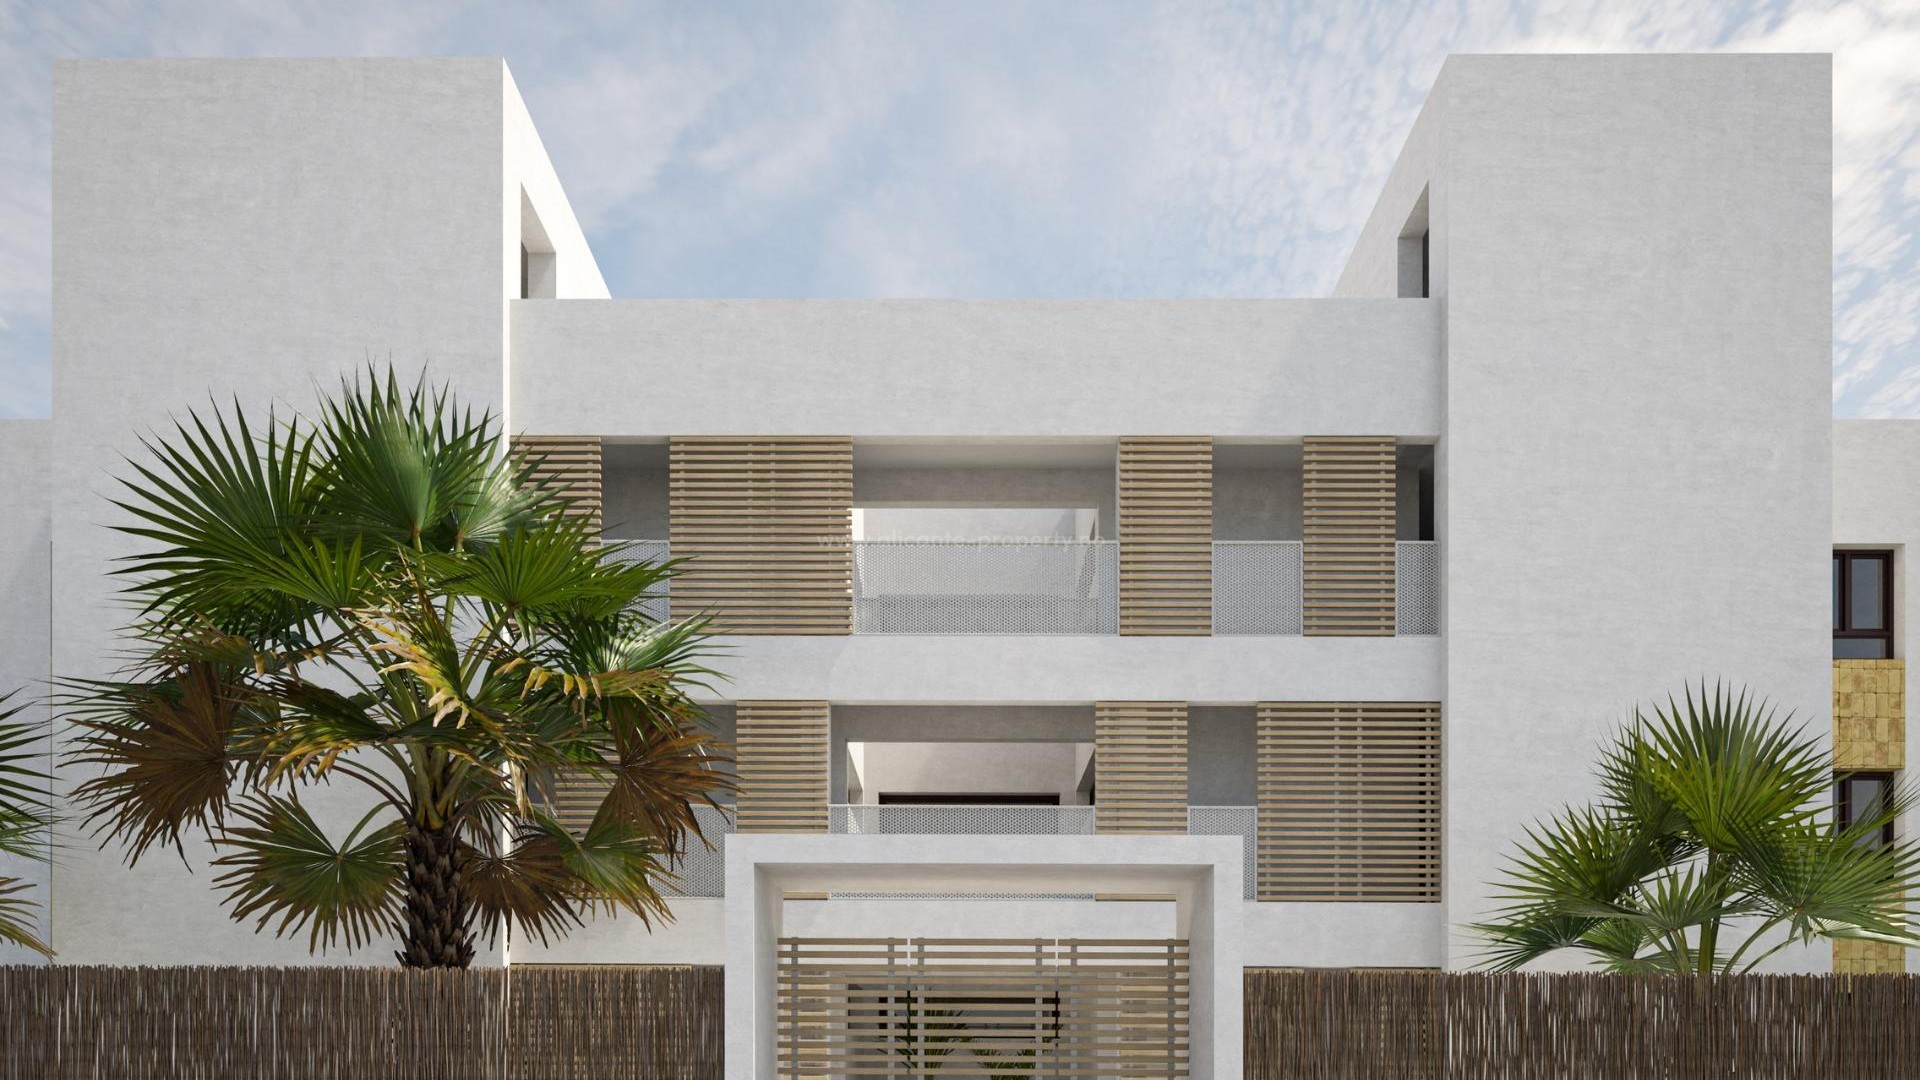 Kjøpe leilighet i boligkompleks i Orihuela Costa? Forskjellige typer leiligheter med svært fine fellesarealer, blant annet et flott svømmebasseng